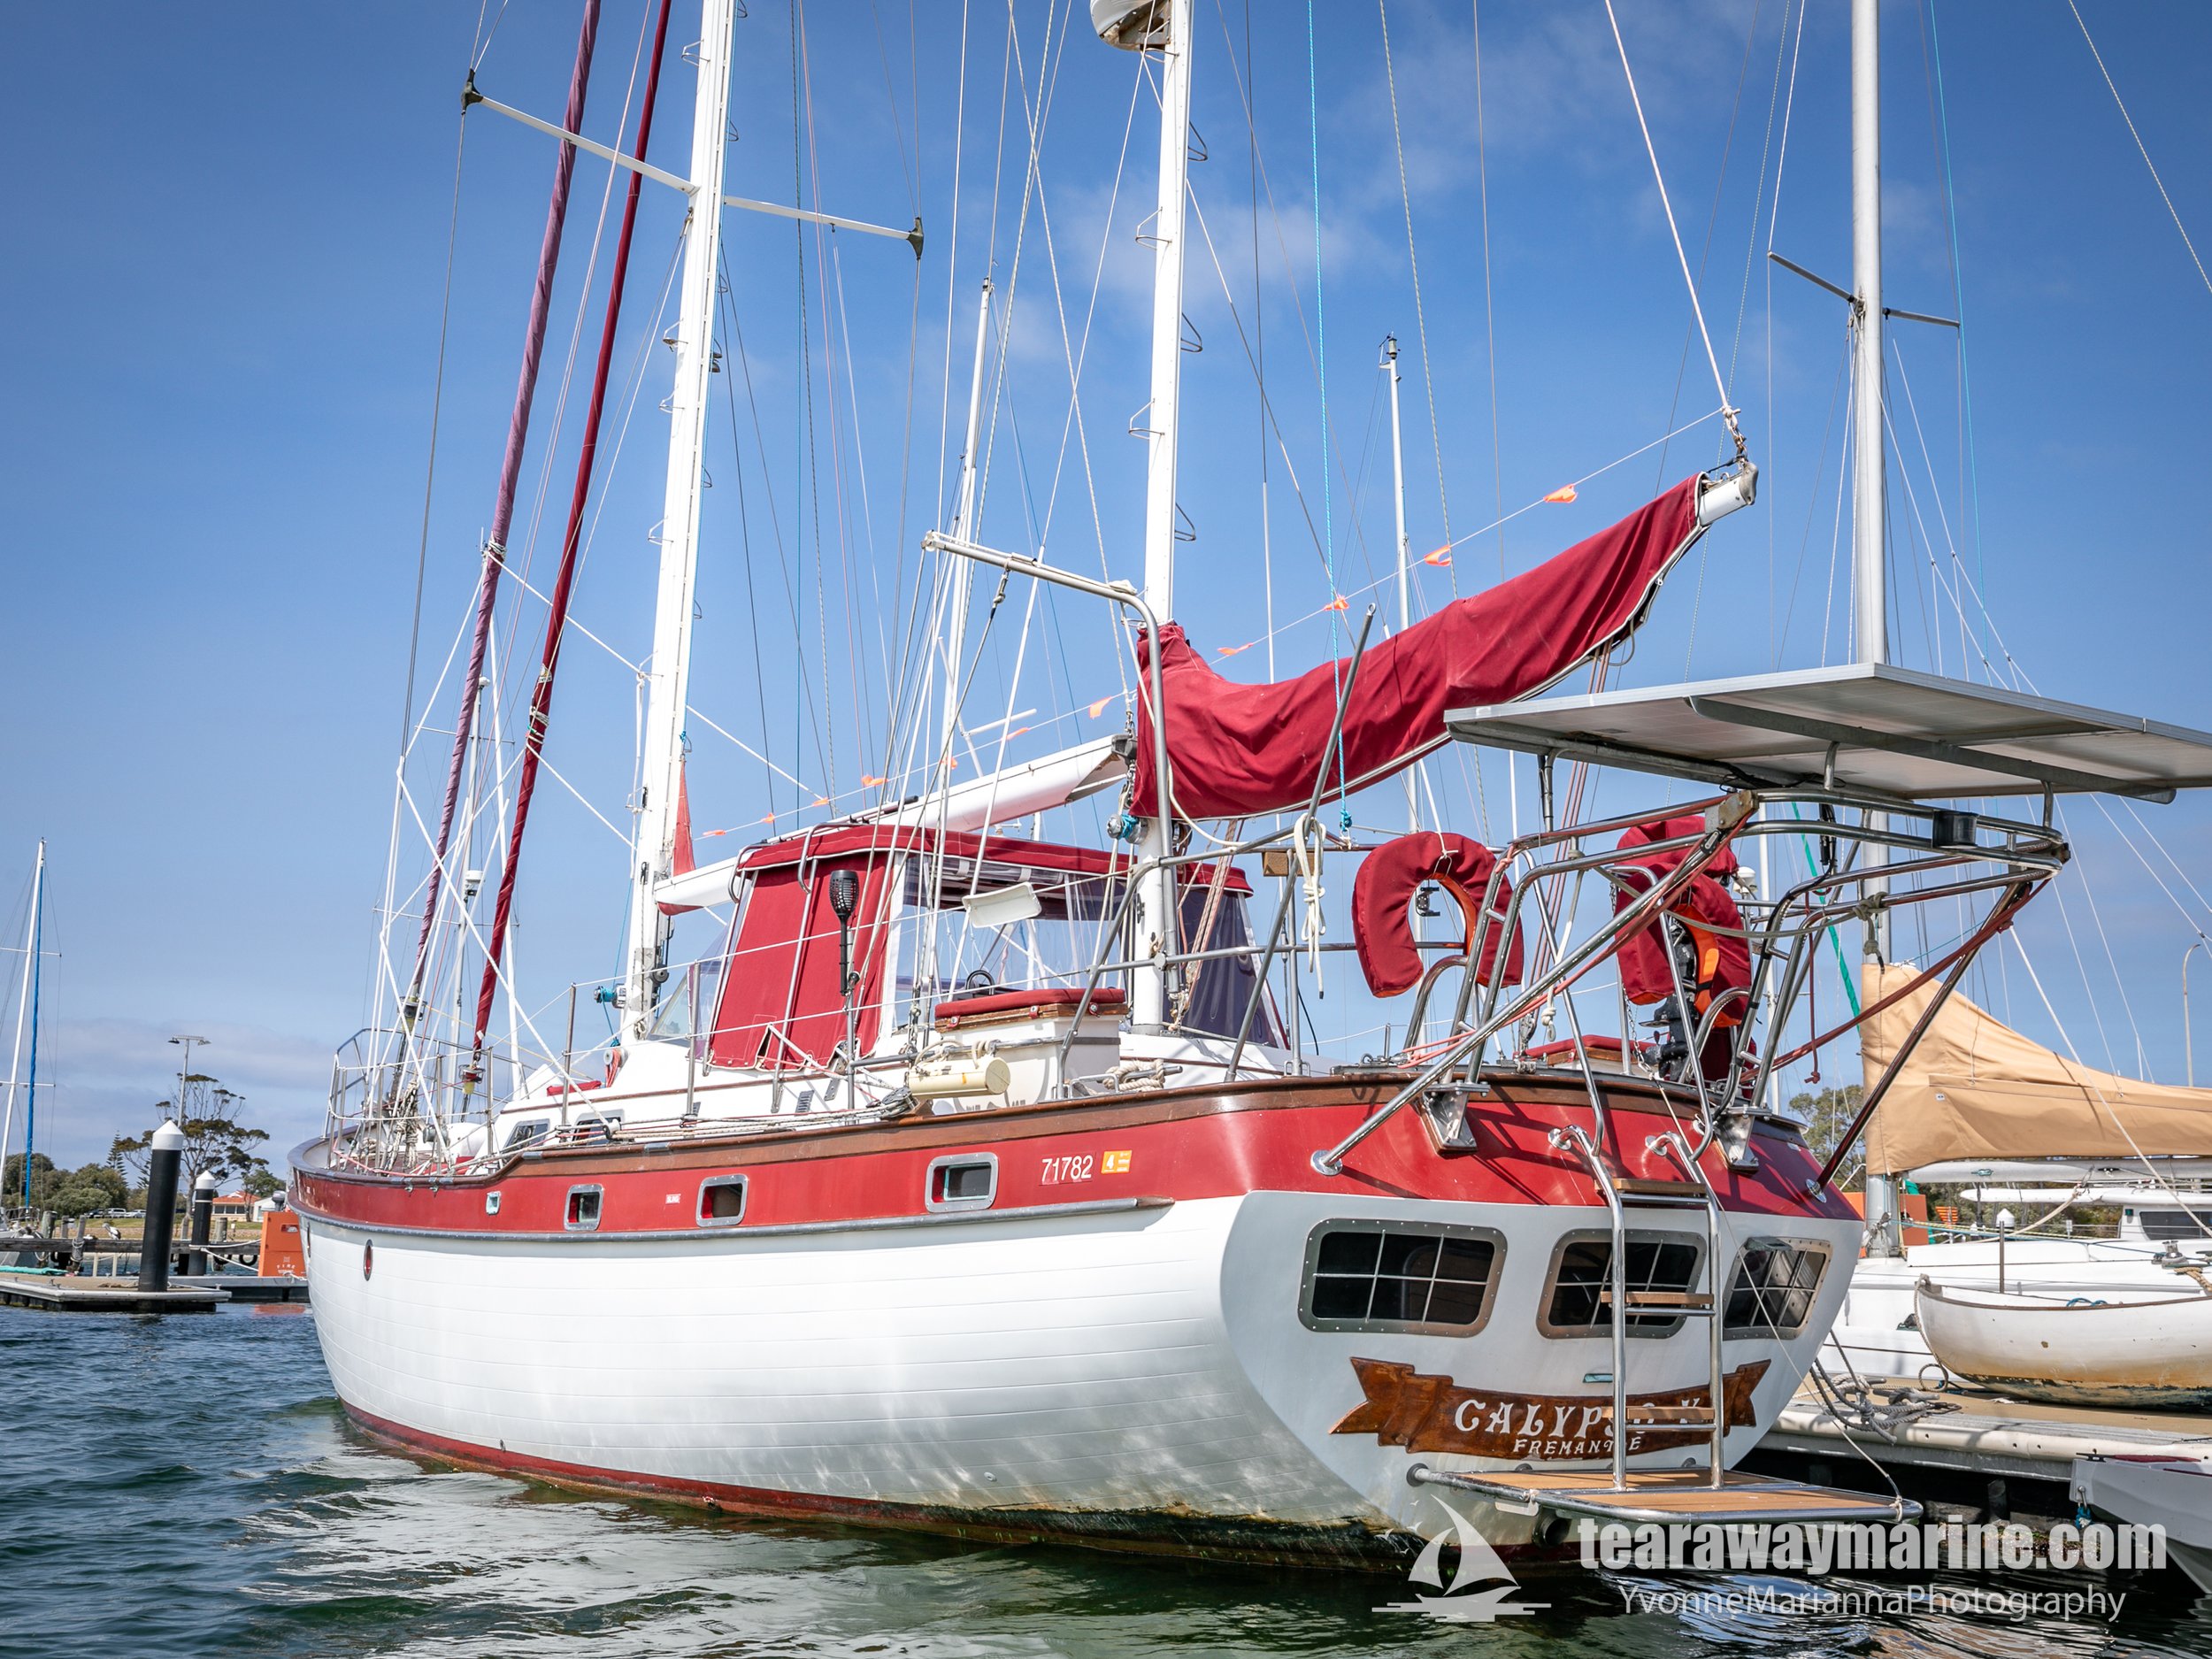 Calypso Yacht Tearaway Marine - Yvonne Marianna Photography-31.jpg